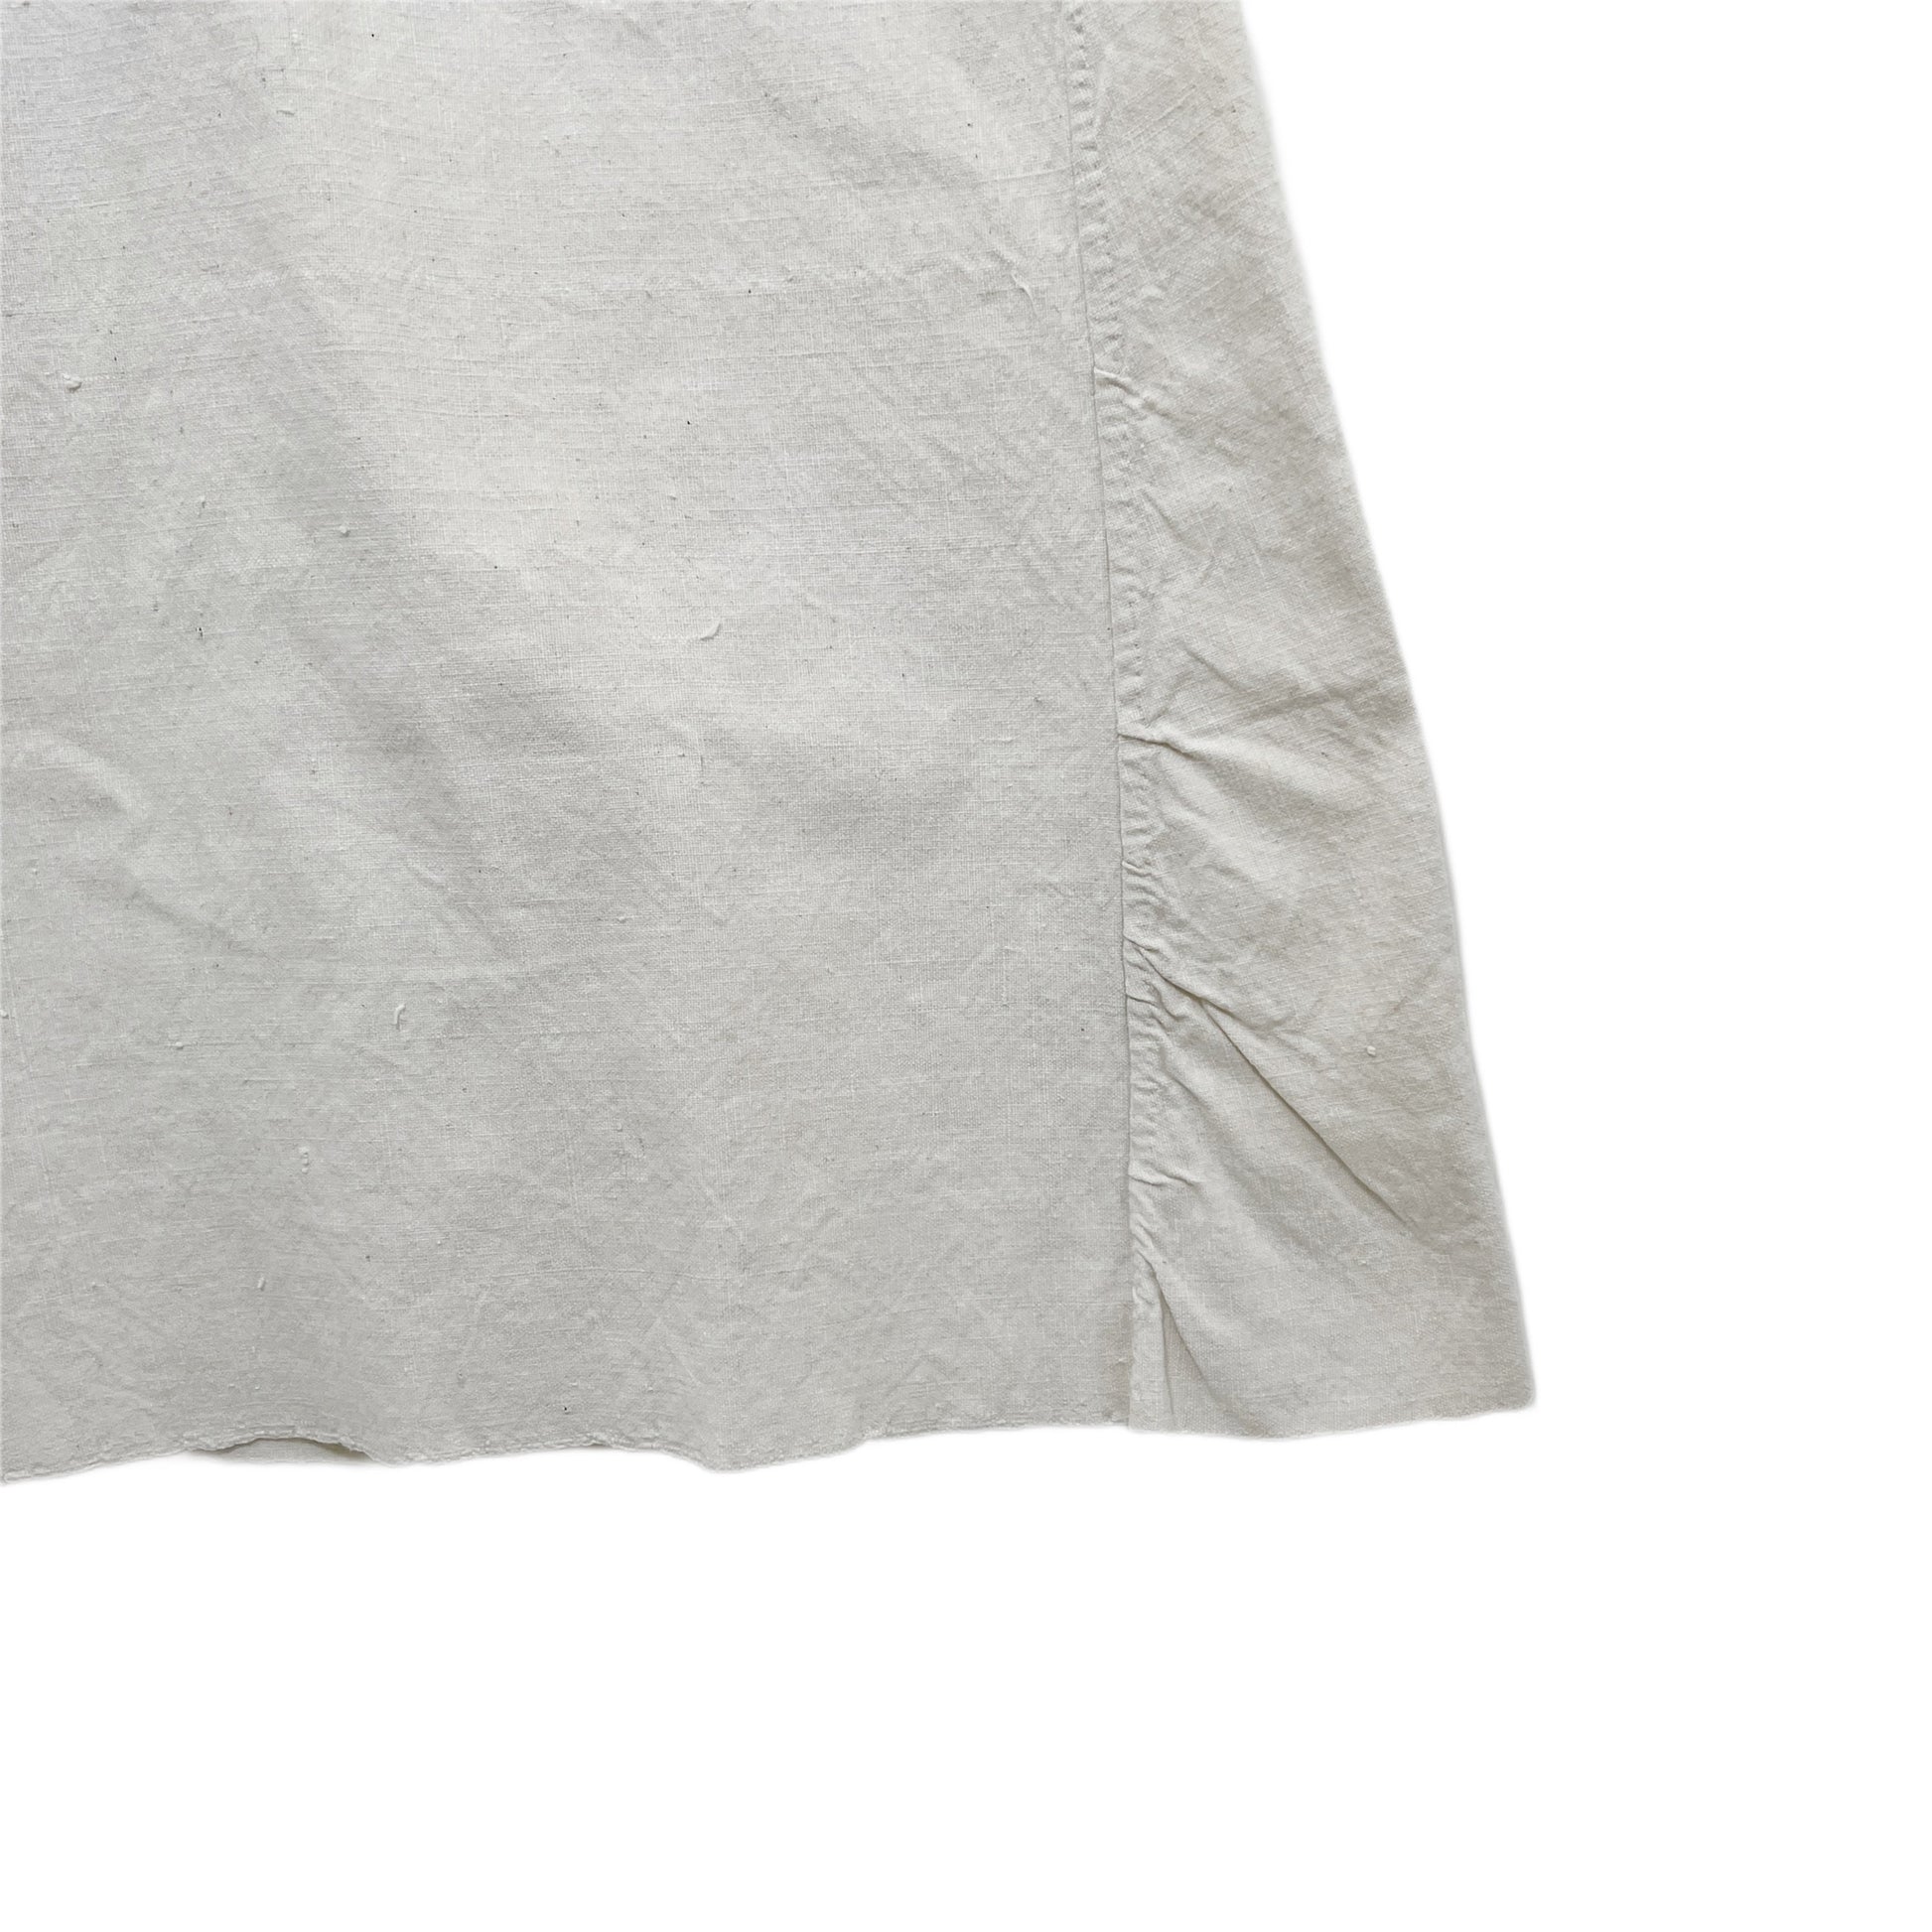 【FEEL】 Antique linen shirt